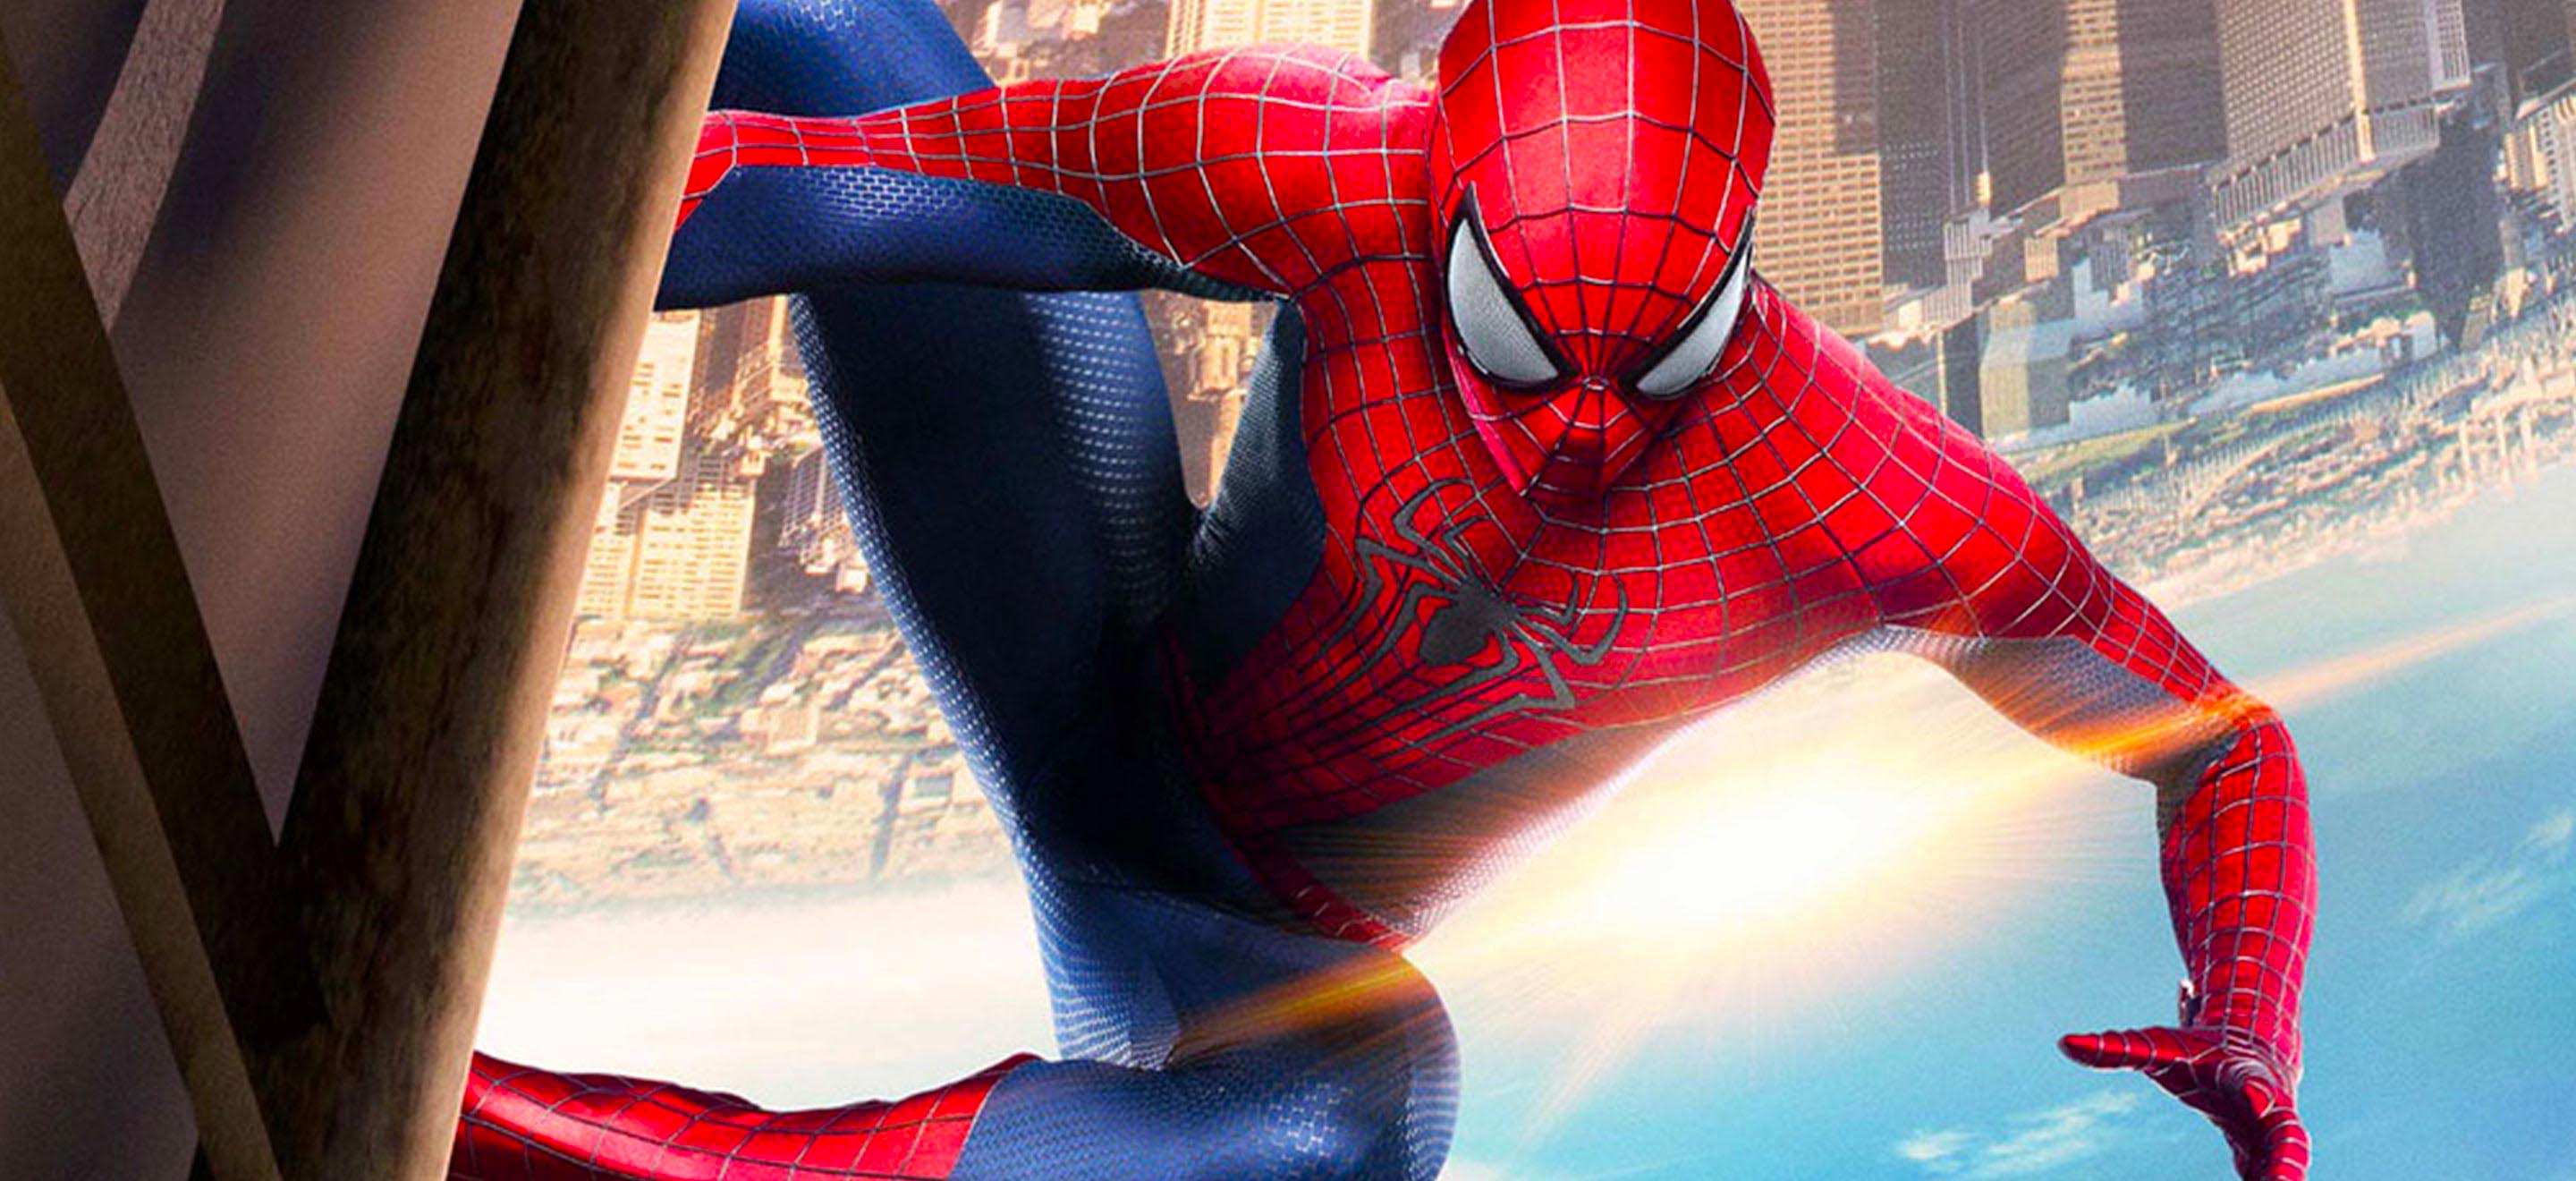 On a imaginé le vilain ultime pour vaincre Spider-Man : Mush-Man !